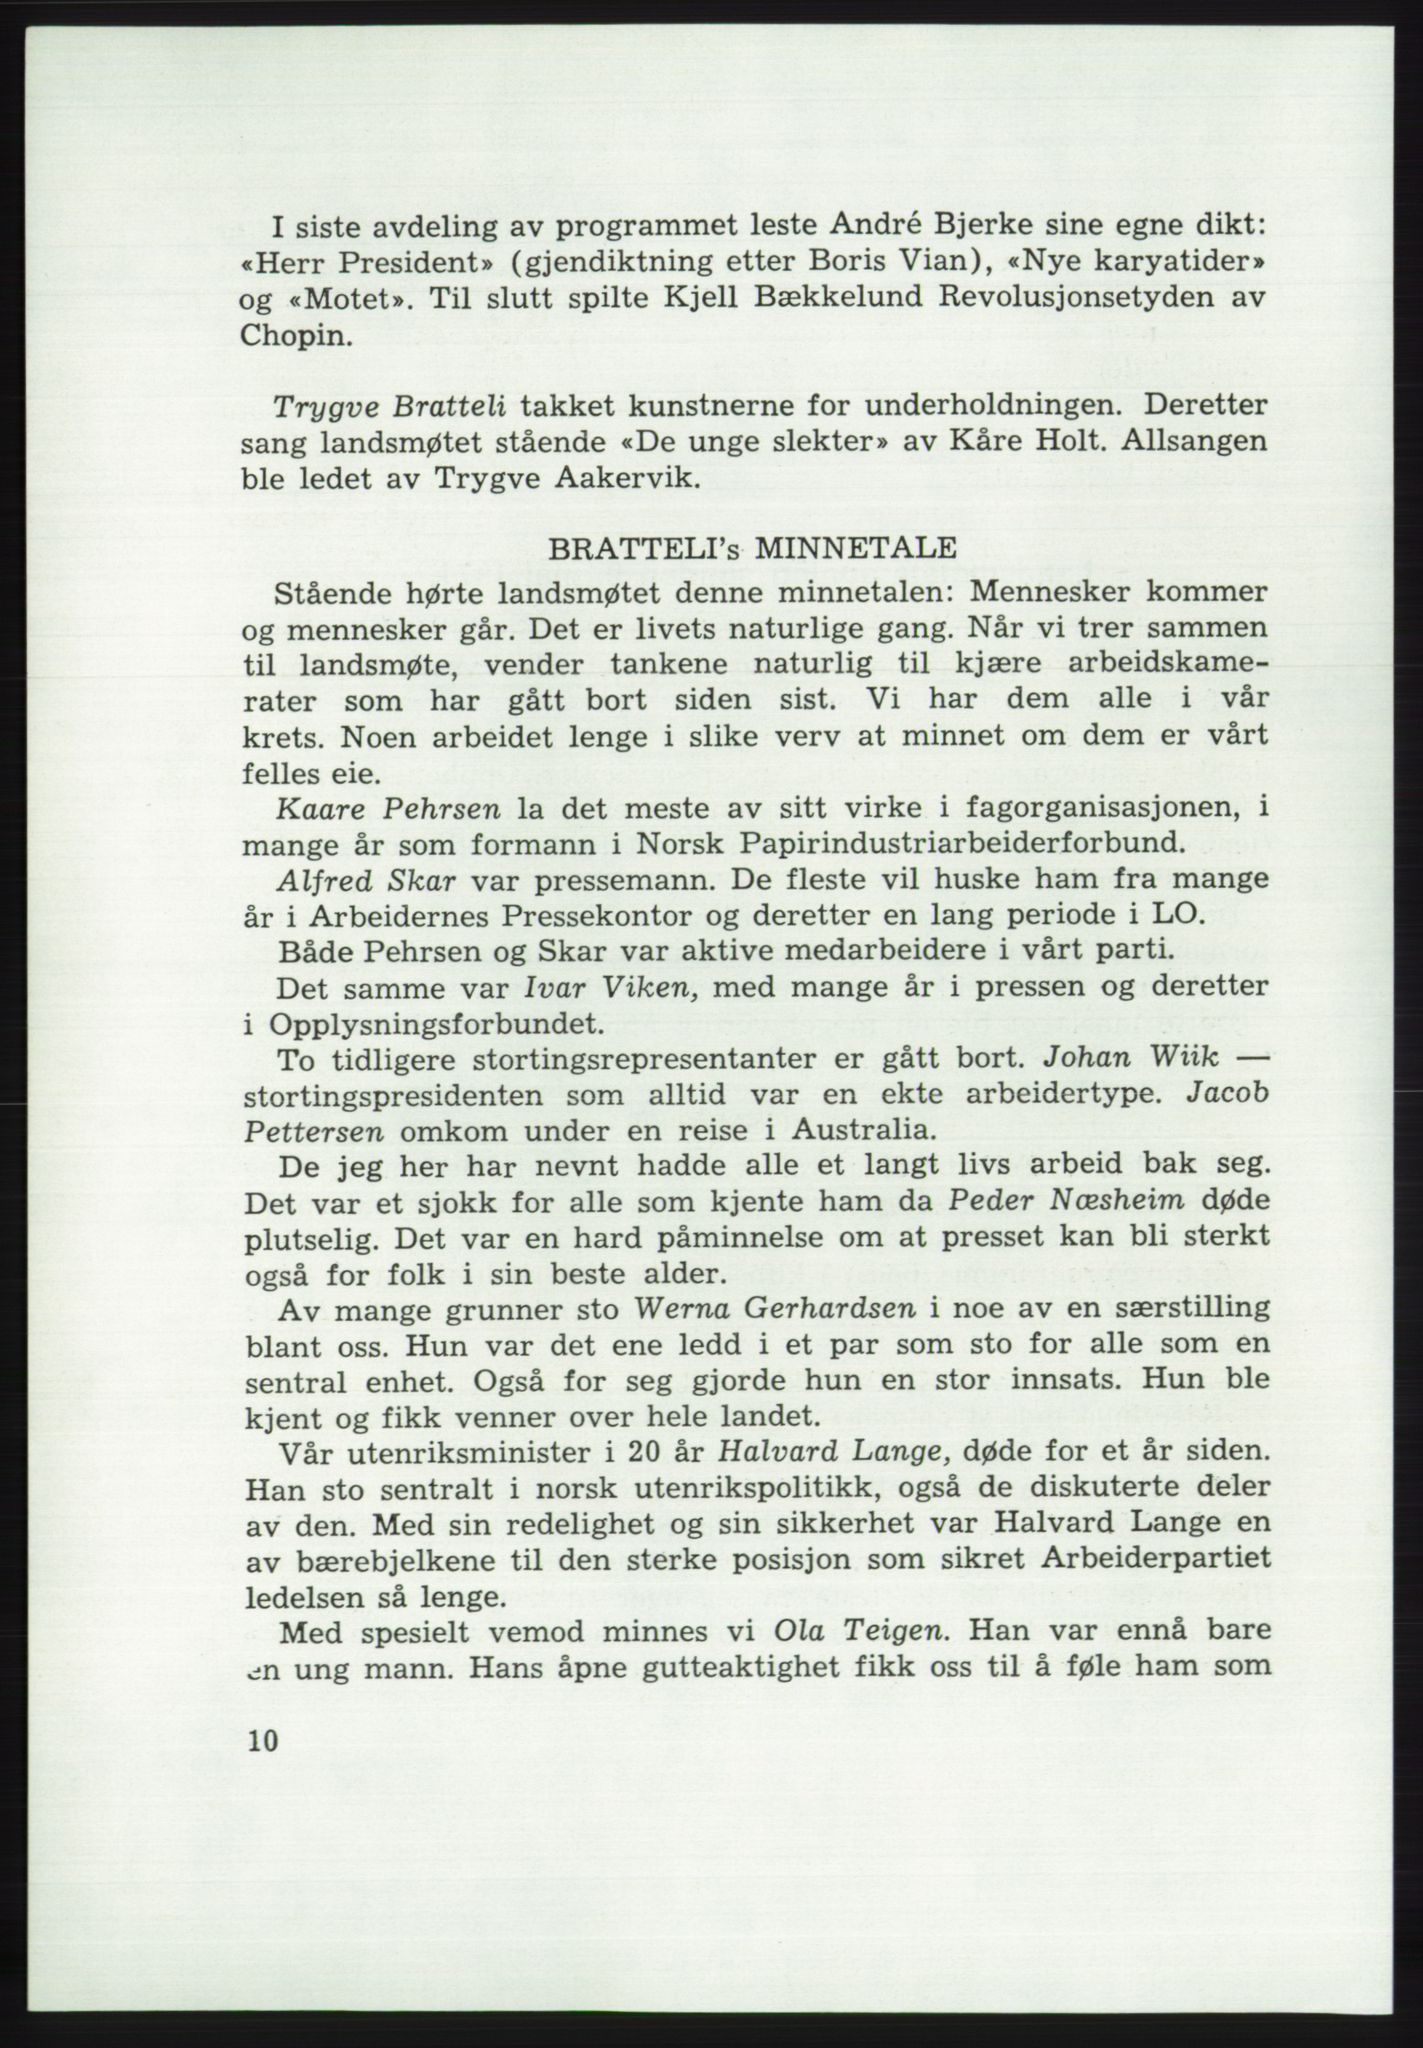 Det norske Arbeiderparti - publikasjoner, AAB/-/-/-: Protokoll over forhandlingene på det 43. ordinære landsmøte 9.-11. mai 1971 i Oslo, 1971, p. 10